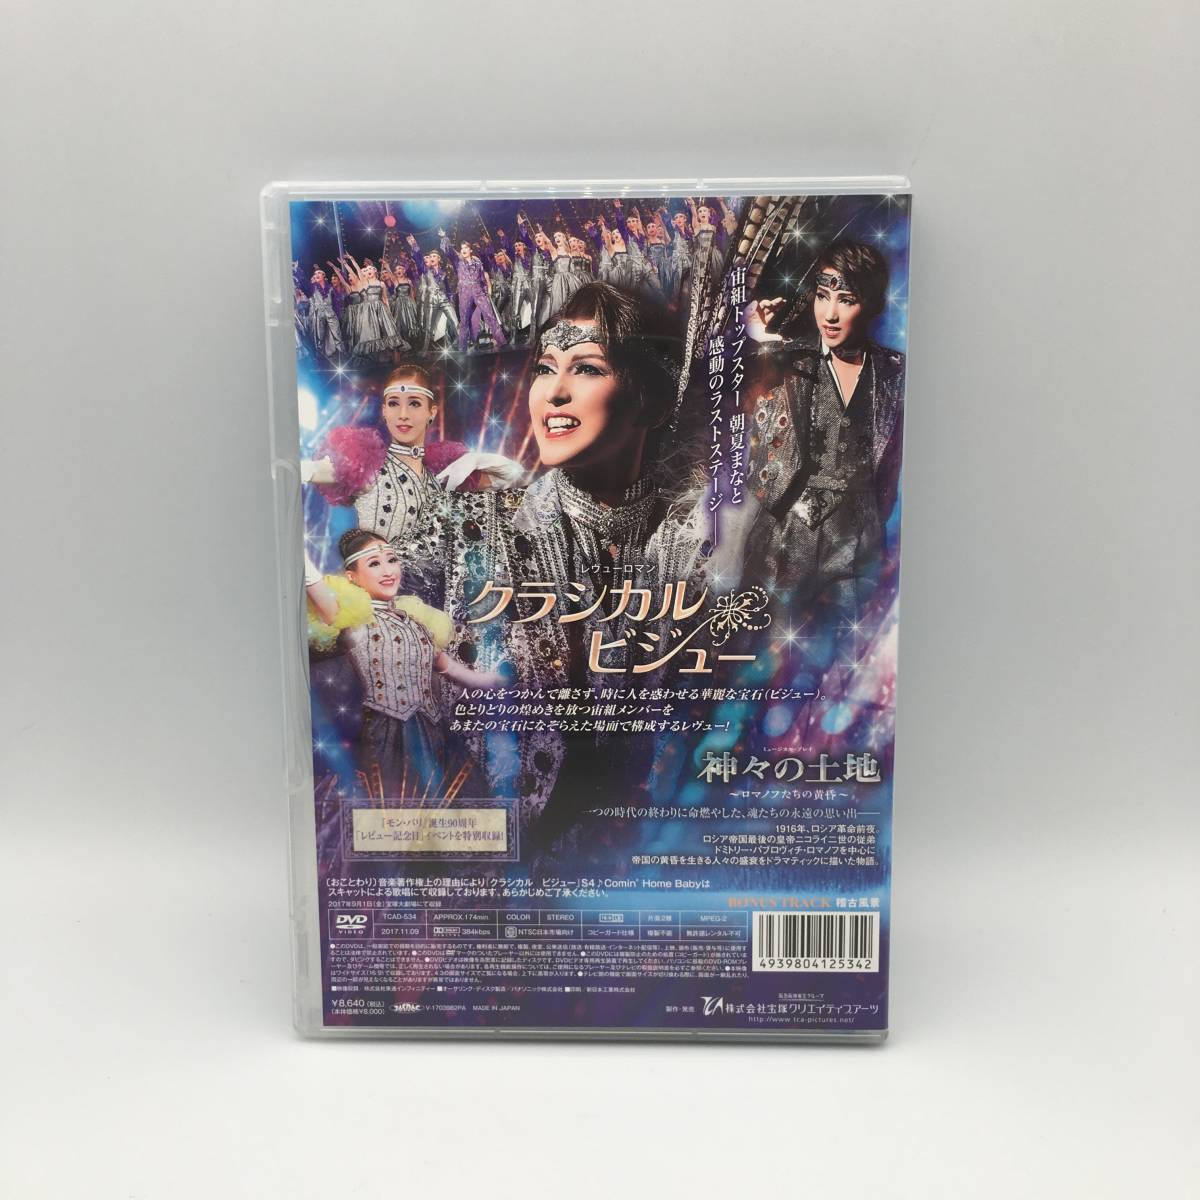 D07089 宝塚歌劇/DVD/宙組公演/ミュージカル プレイ 神々の土地